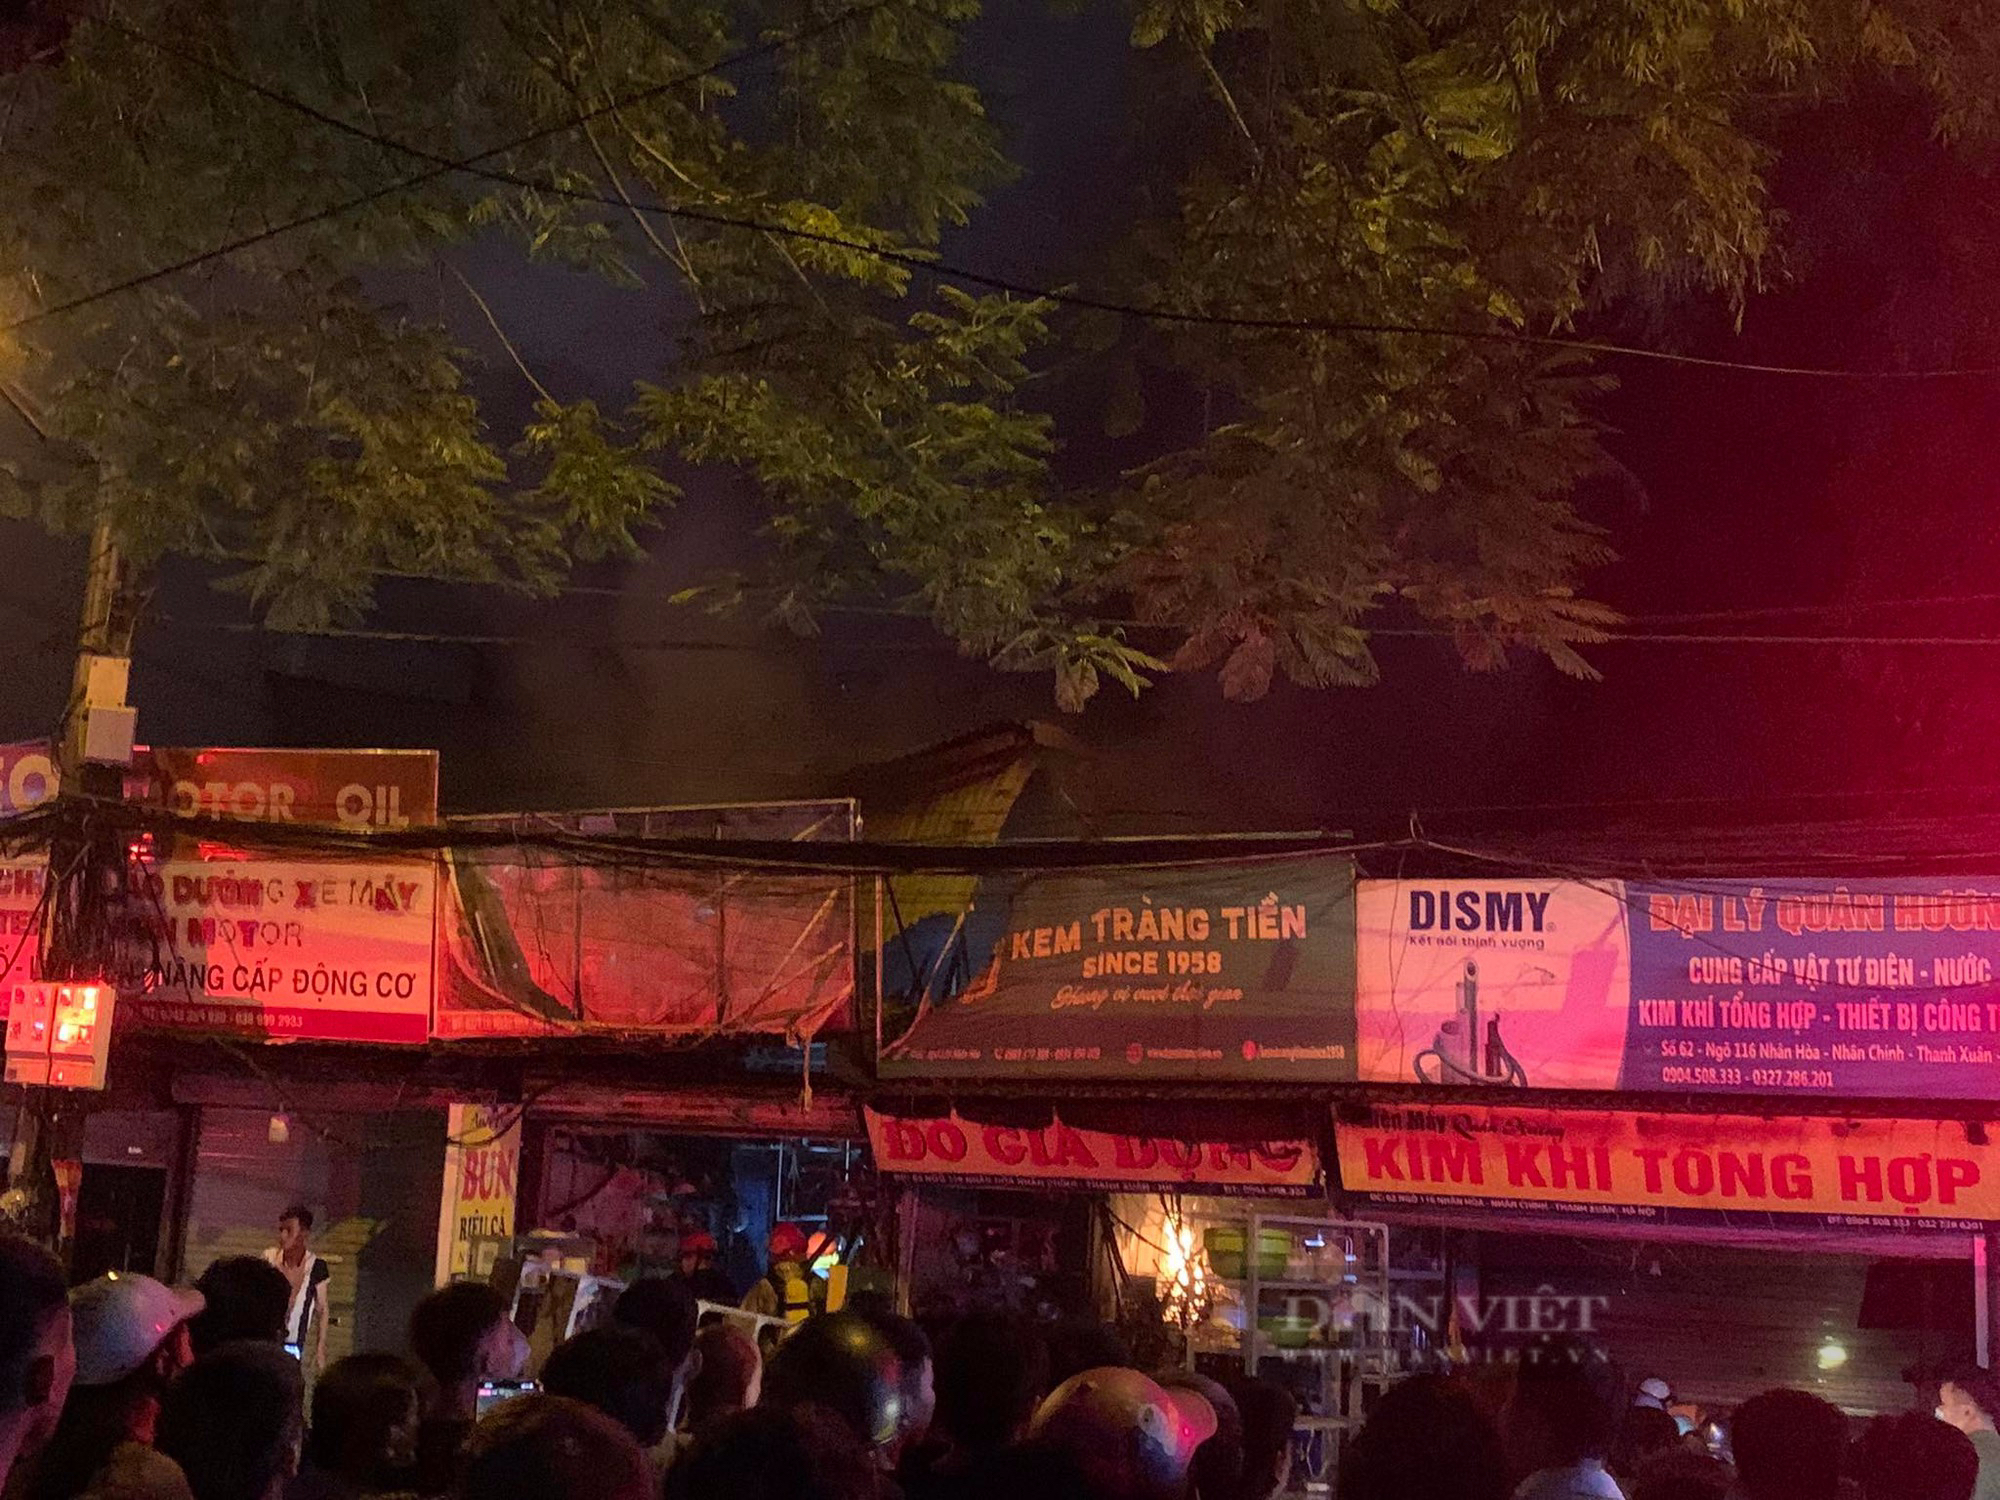 Cháy nhà phố Nhân Hòa: Cháy 3 nhà liền kề ở Hà Nội trong đêm, cặp vợ chồng khóc nghẹn khi toàn bộ tài sản bị thiêu rụi  - Ảnh 3.